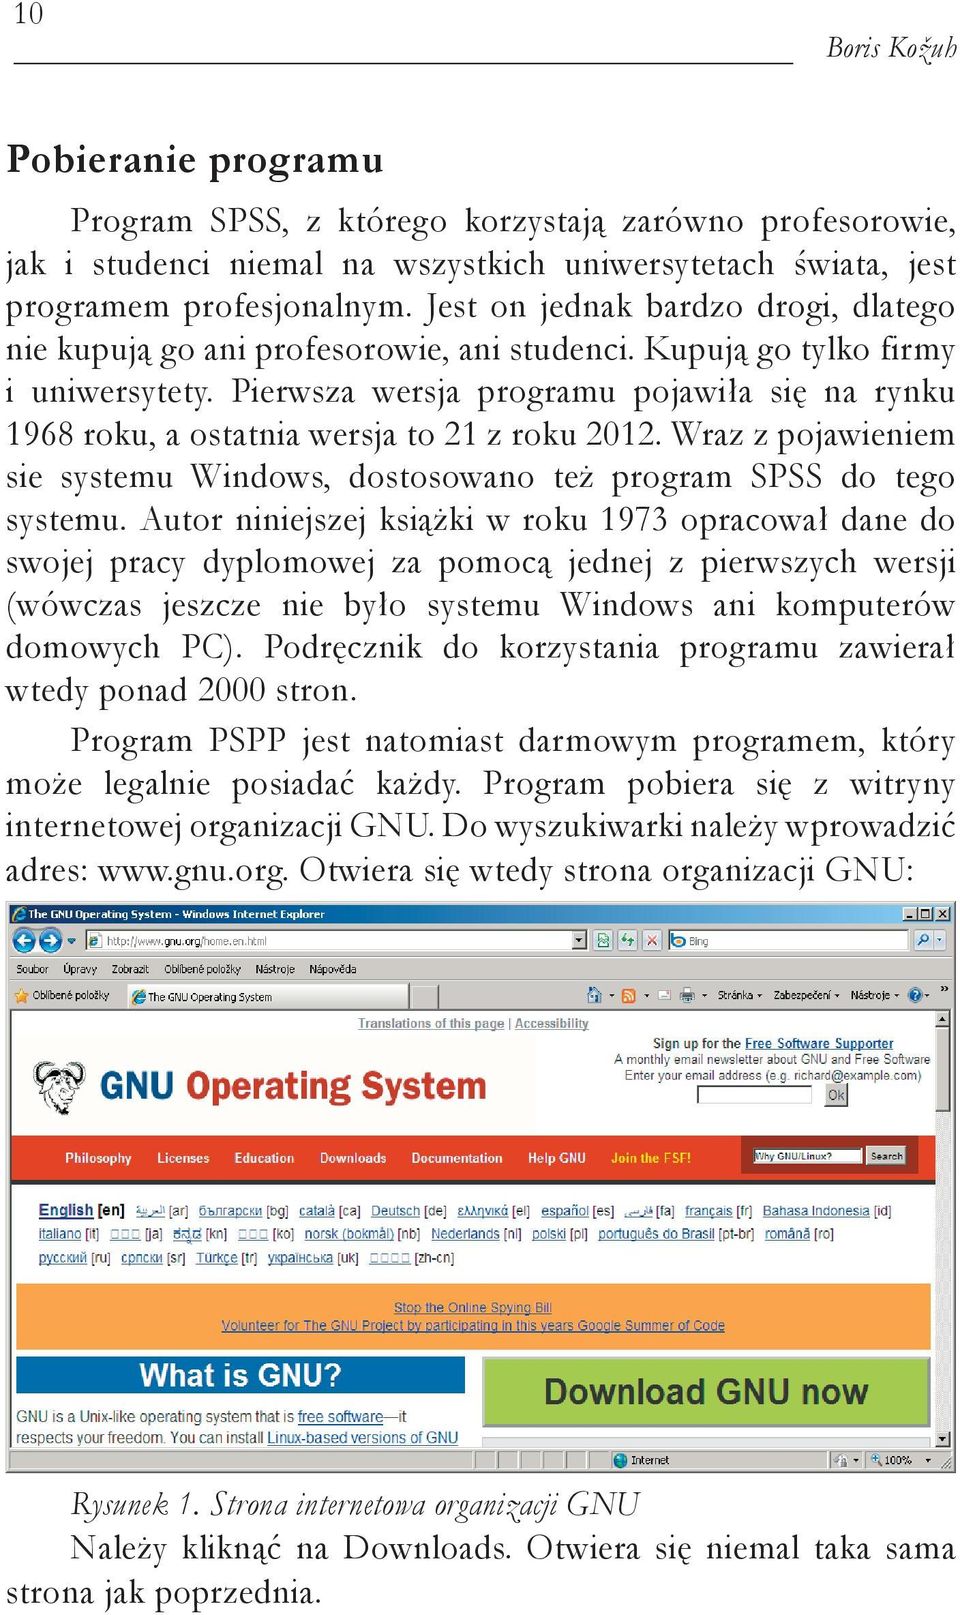 Pierwsza wersja programu pojawiła się na rynku 1968 roku, a ostatnia wersja to 21 z roku 2012. Wraz z pojawieniem sie systemu Windows, dostosowano też program SPSS do tego systemu.